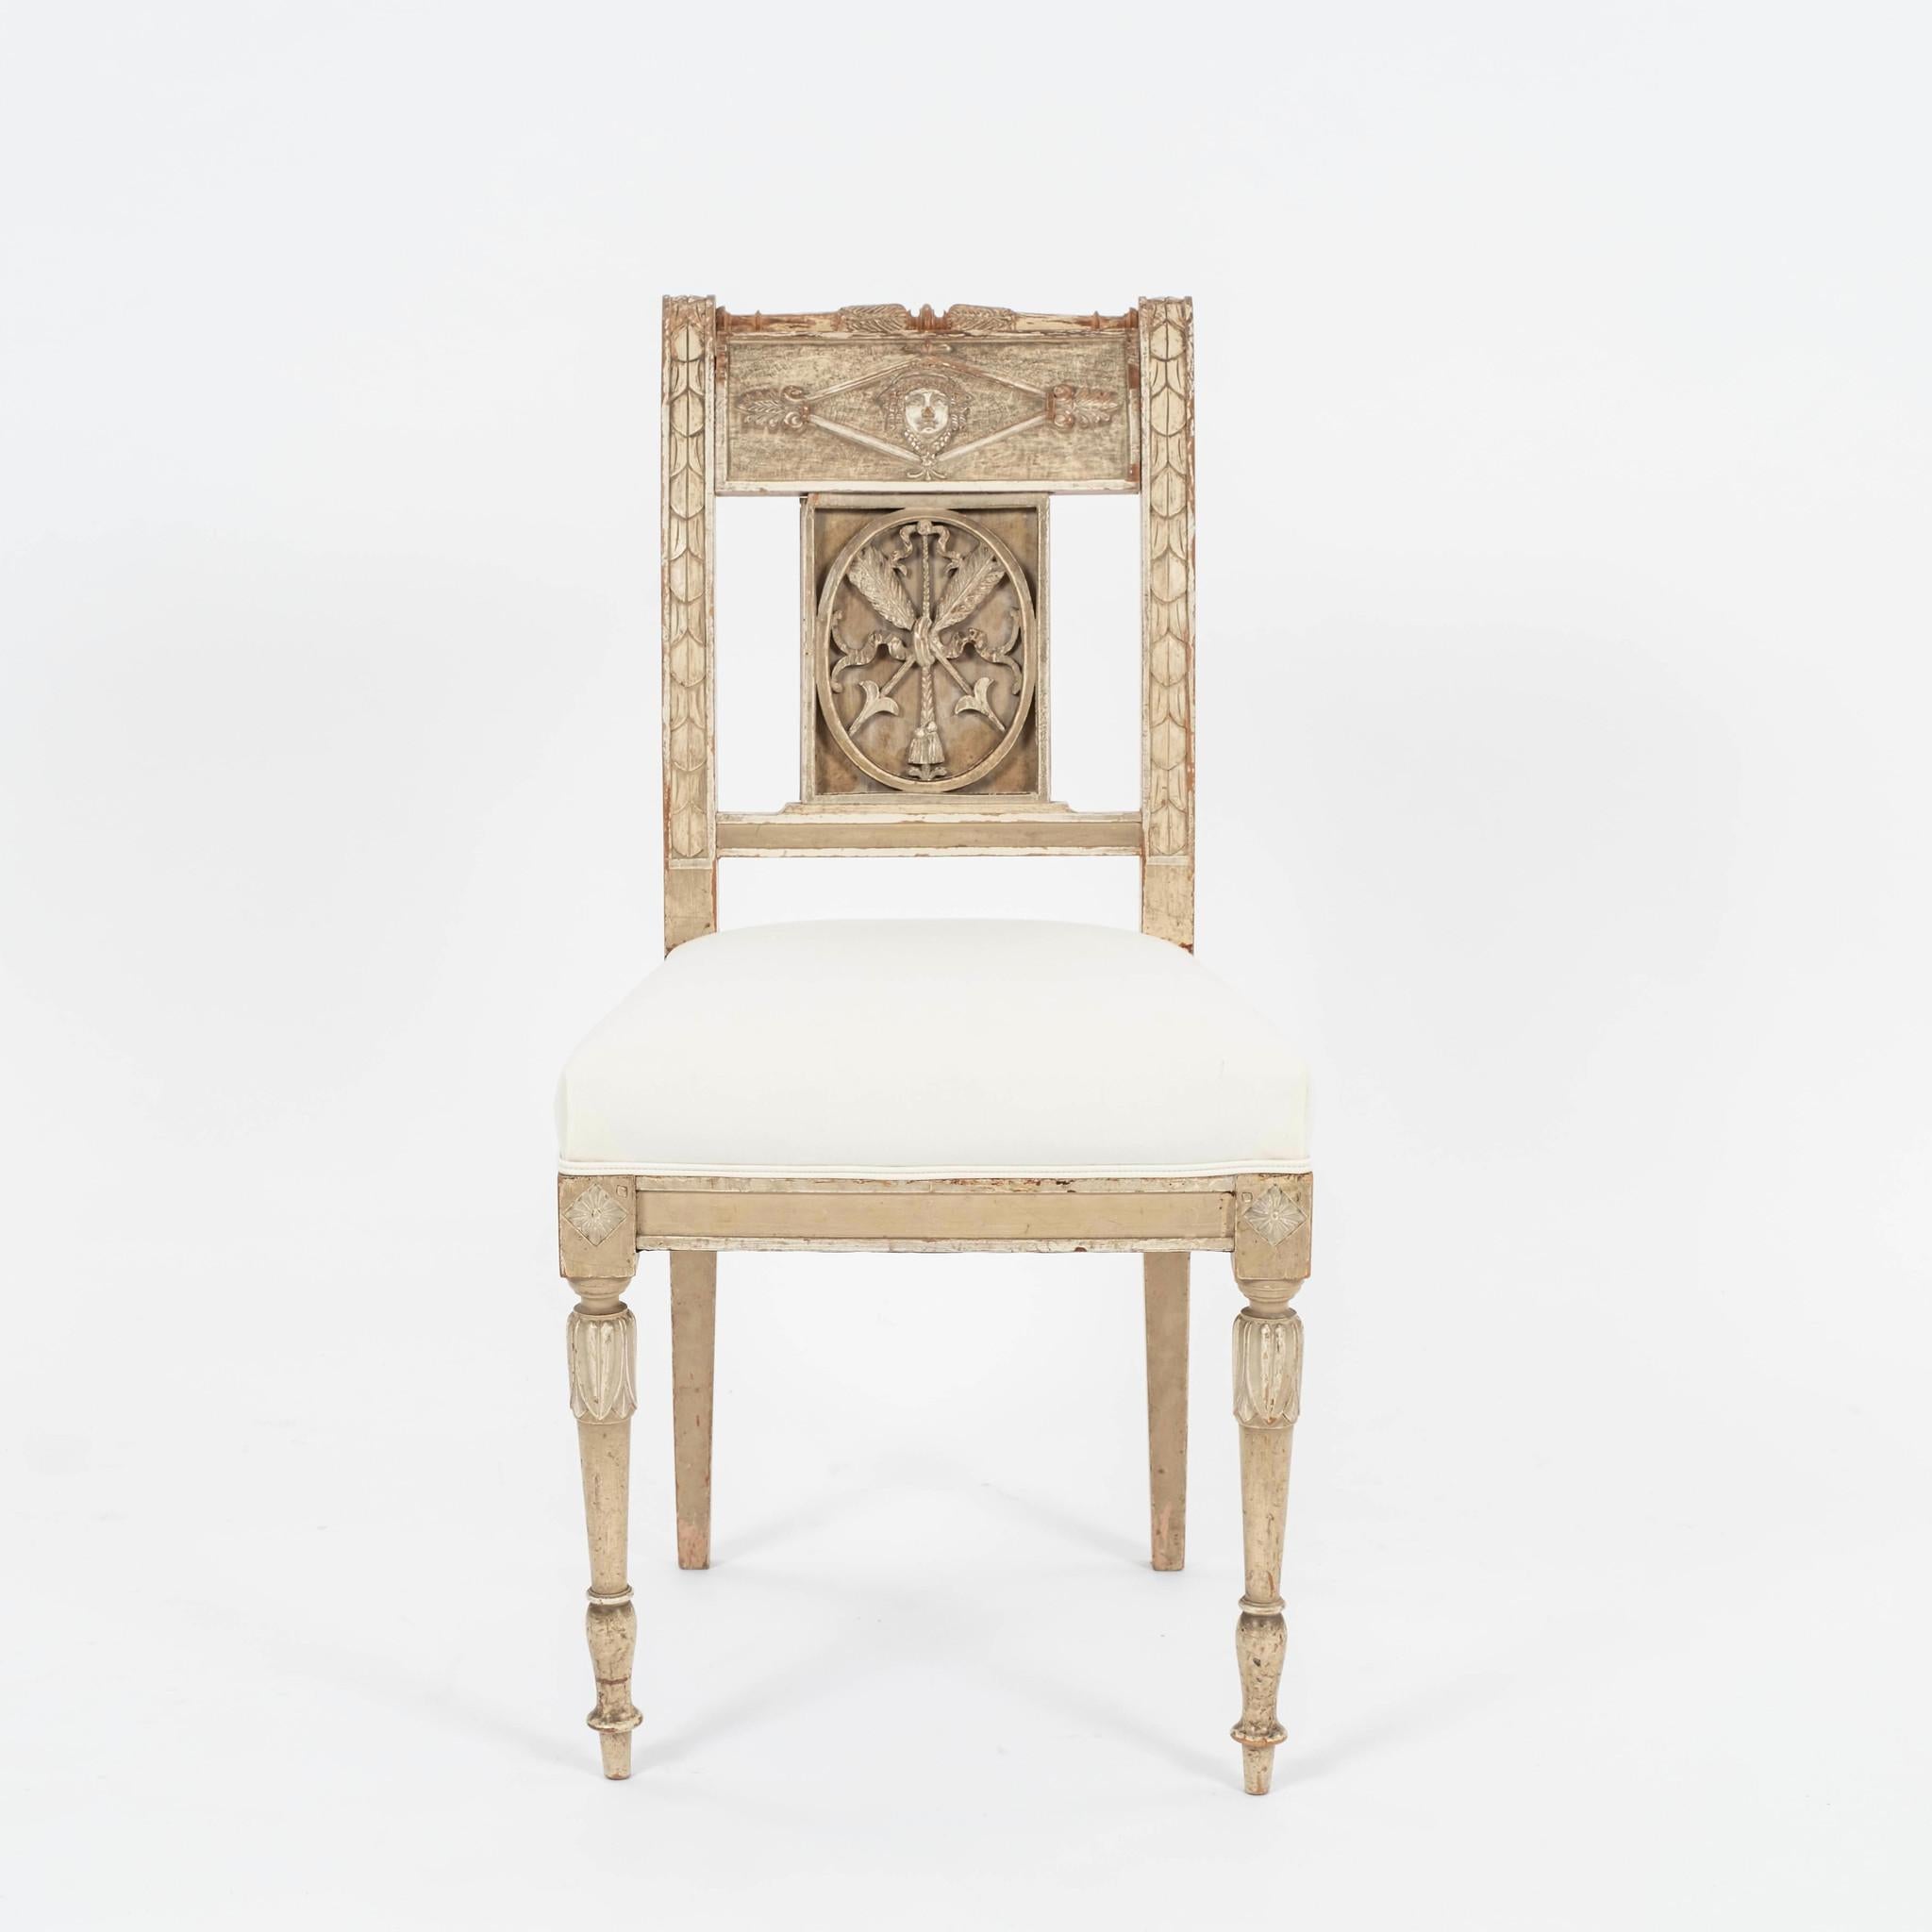 Ensemble de quatre chaises gustaviennes du XVIIIe siècle : magnifiquement sculptées, peintes par grattage et ornées d'un exceptionnel décor de motifs néoclassiques. Nouvellement tapissé en coutil.
Quatre disponibles et également vendus par paire